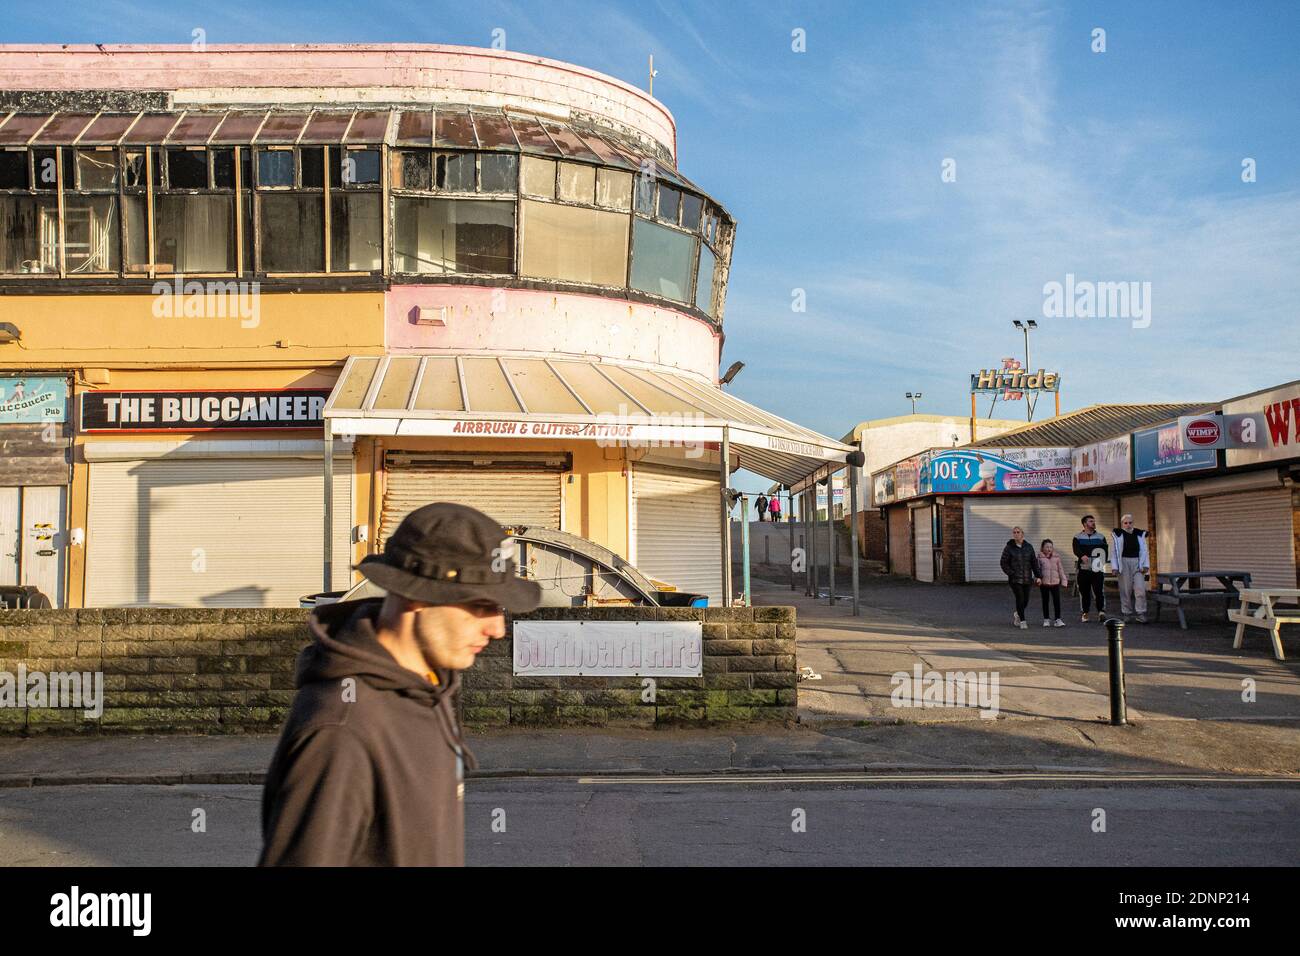 GRANDE-BRETAGNE / pays de Galles /Coney Beach Porthcawl / personnes passant par les arcades et le parc d'attractions sur le front de mer où les magasins et les étals sont fermés. Banque D'Images